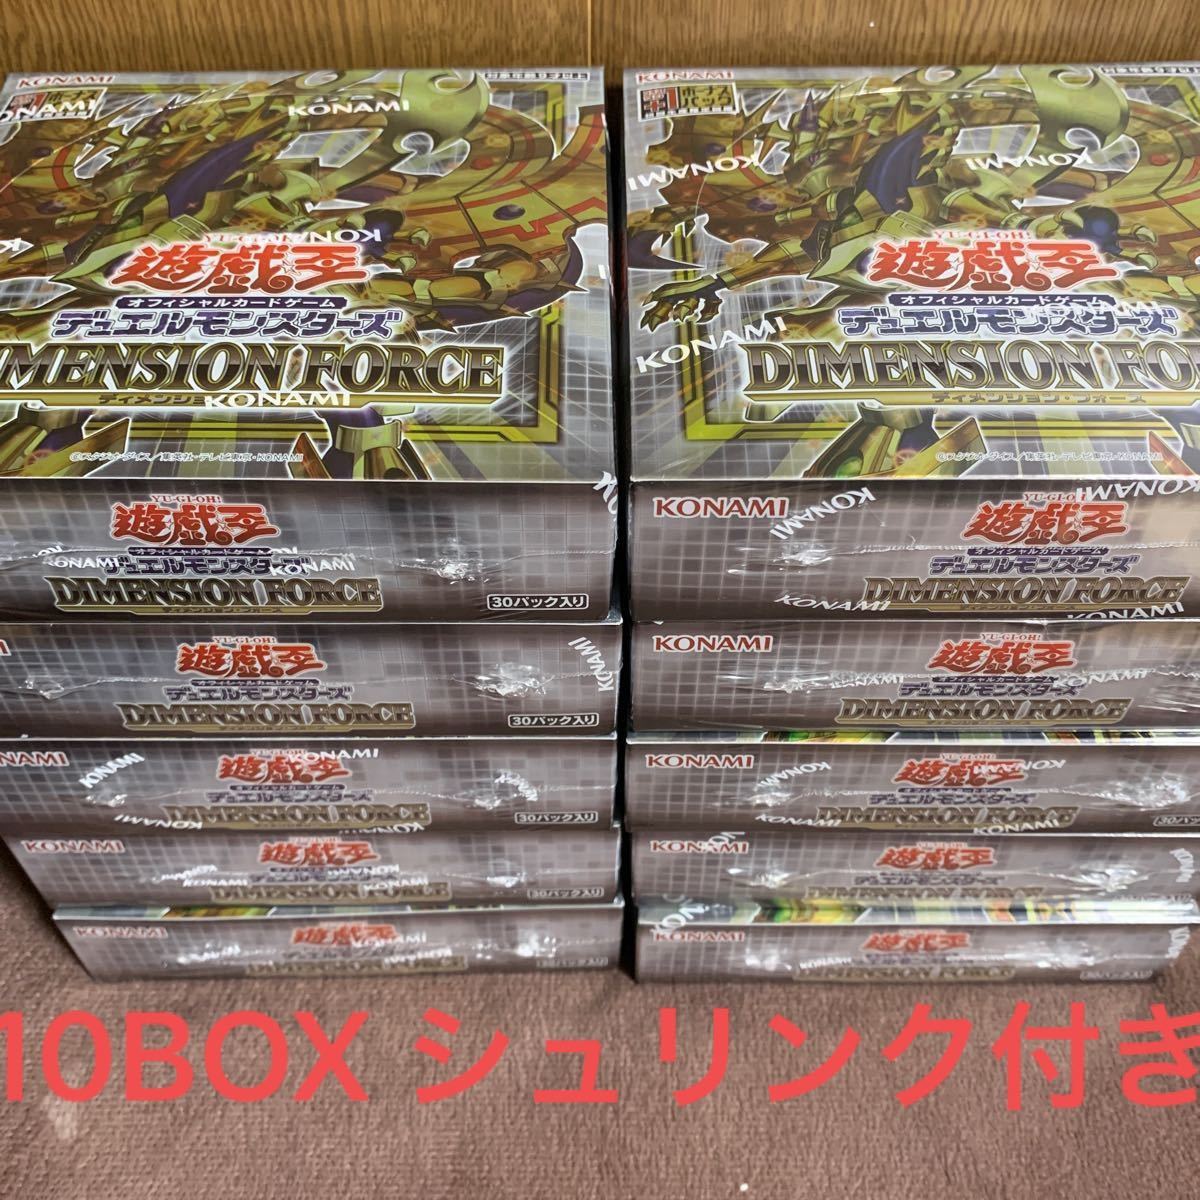 遊戯王 ディメンションフォース 6BOX 初回生産版 公式プロモーション